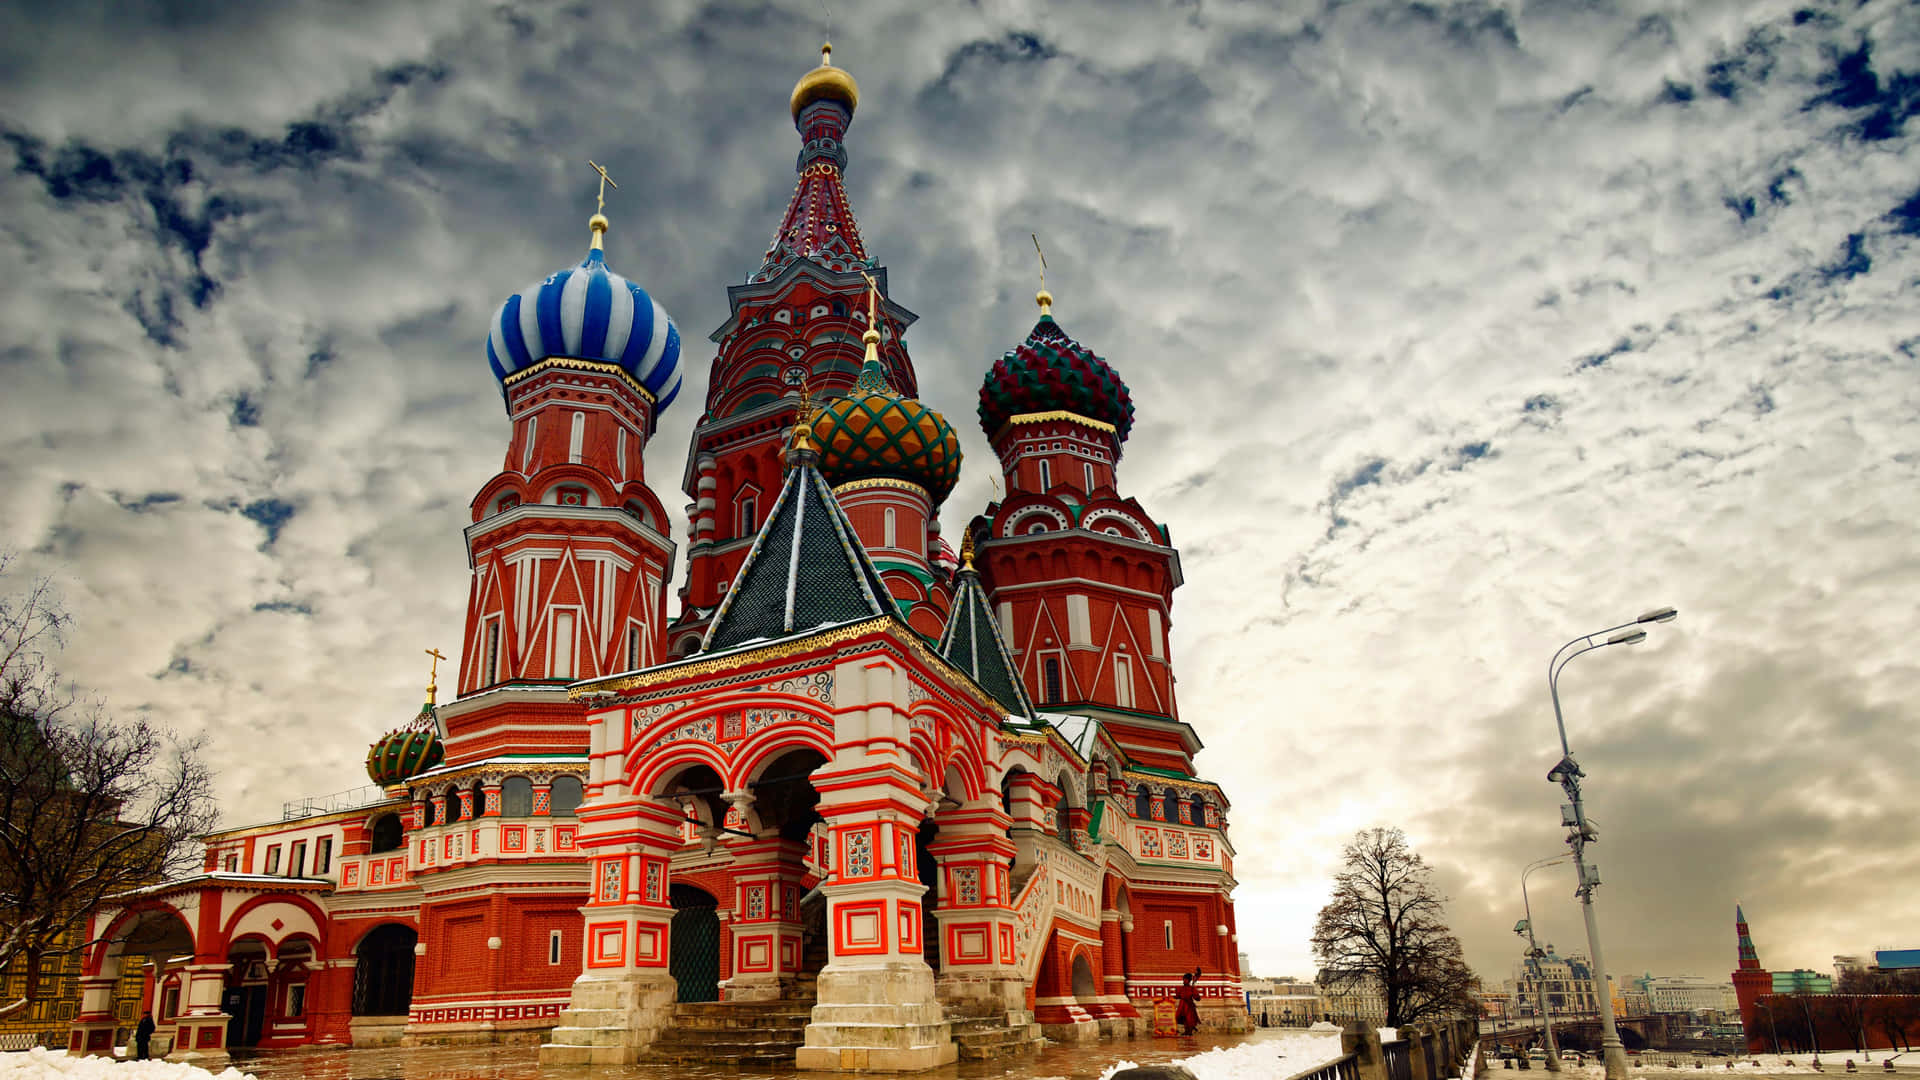 Vasilij-katedralen 5120 X 2880 Wallpaper